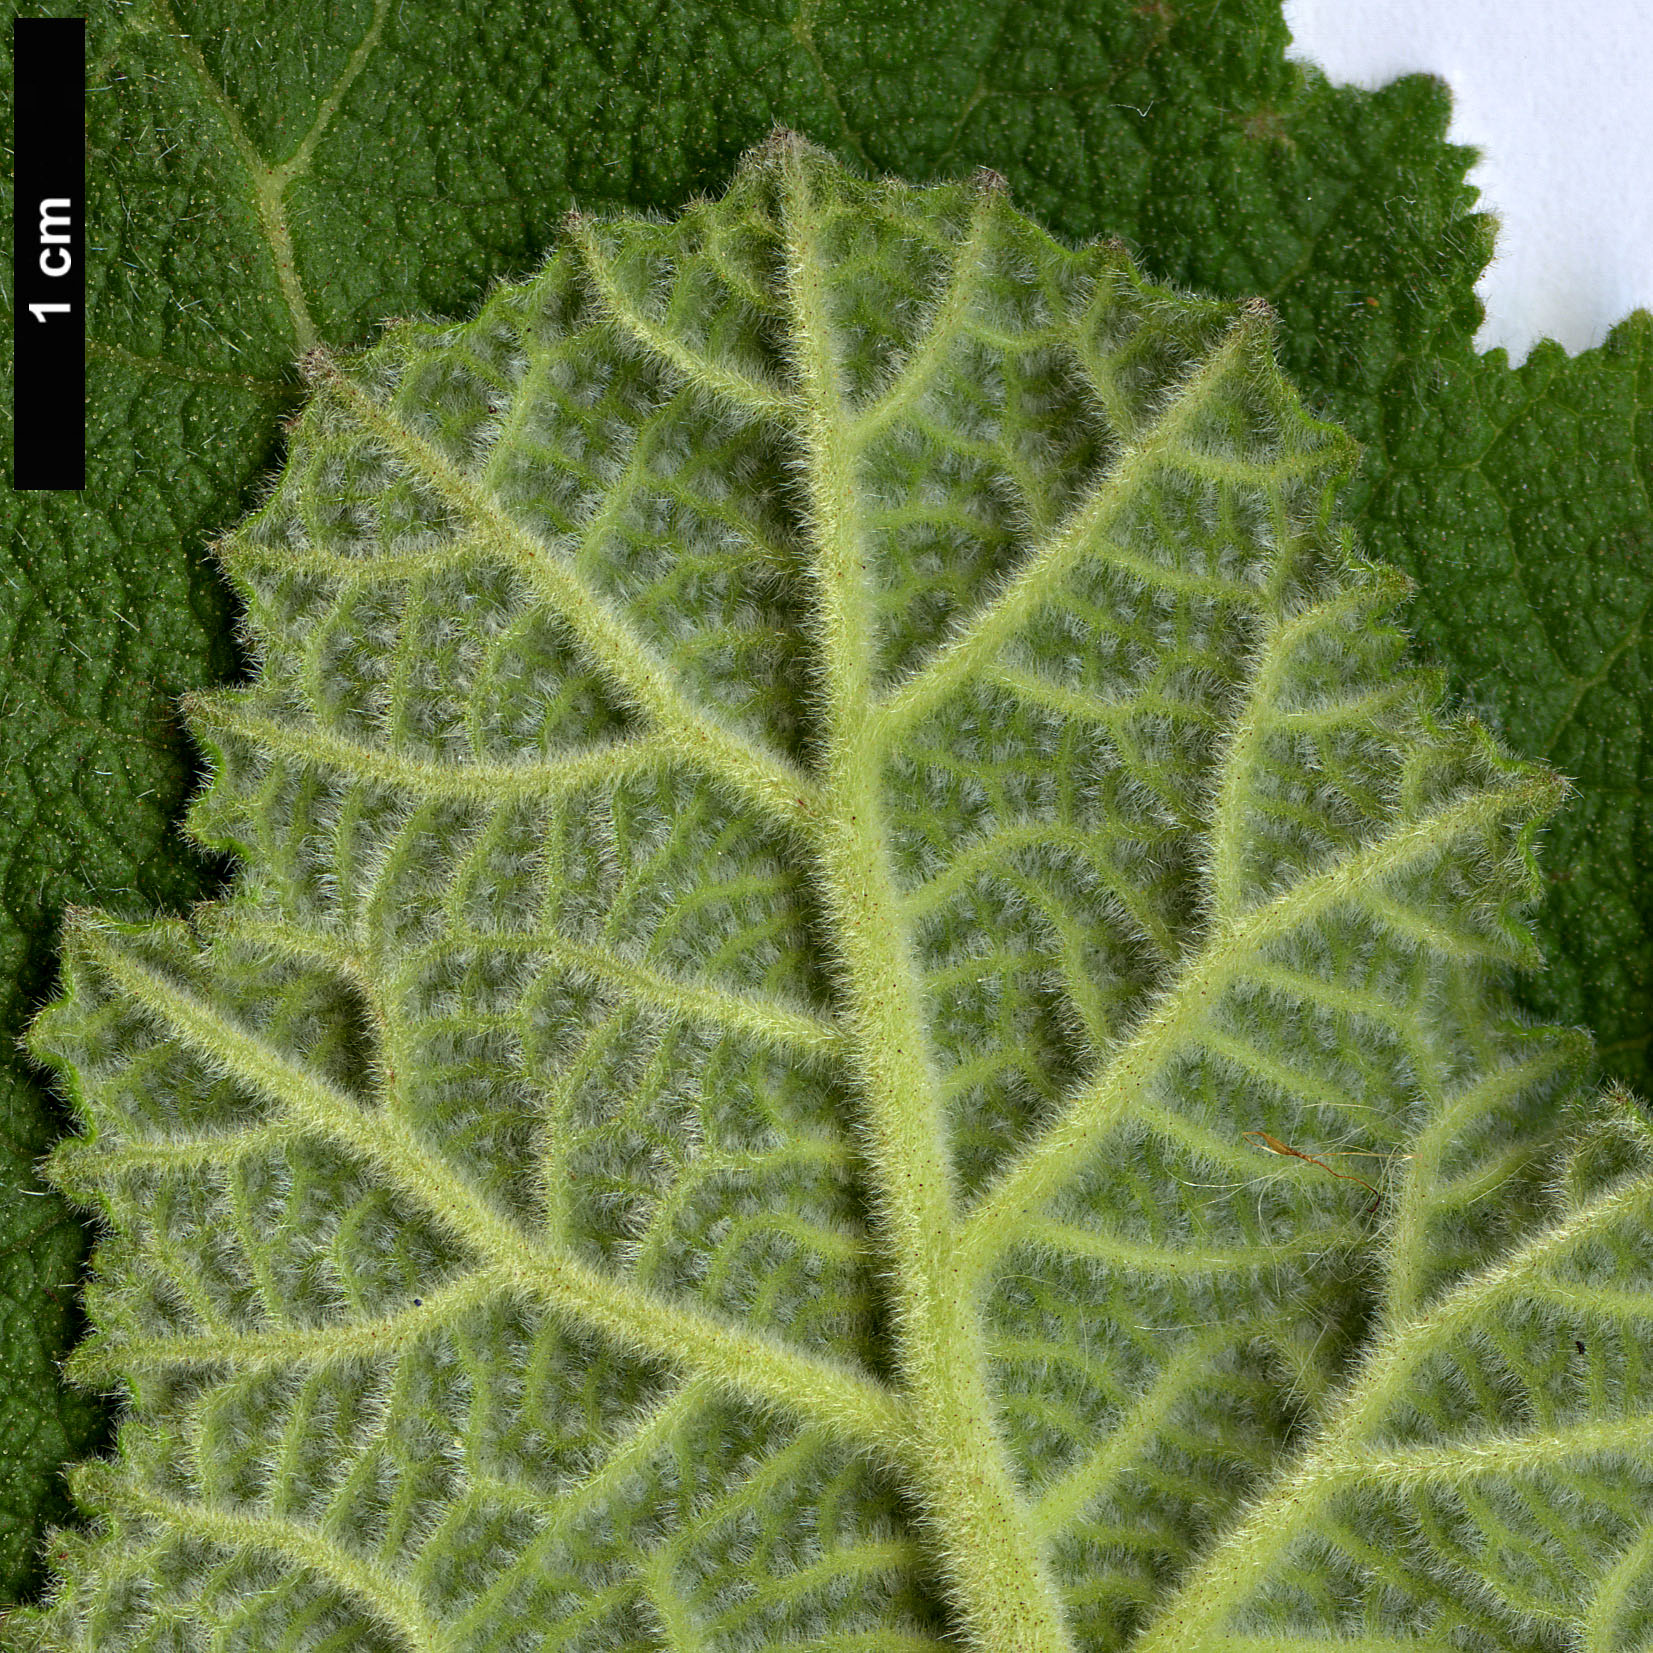 High resolution image: Family: Boraginaceae - Genus: Wigandia - Taxon: urens